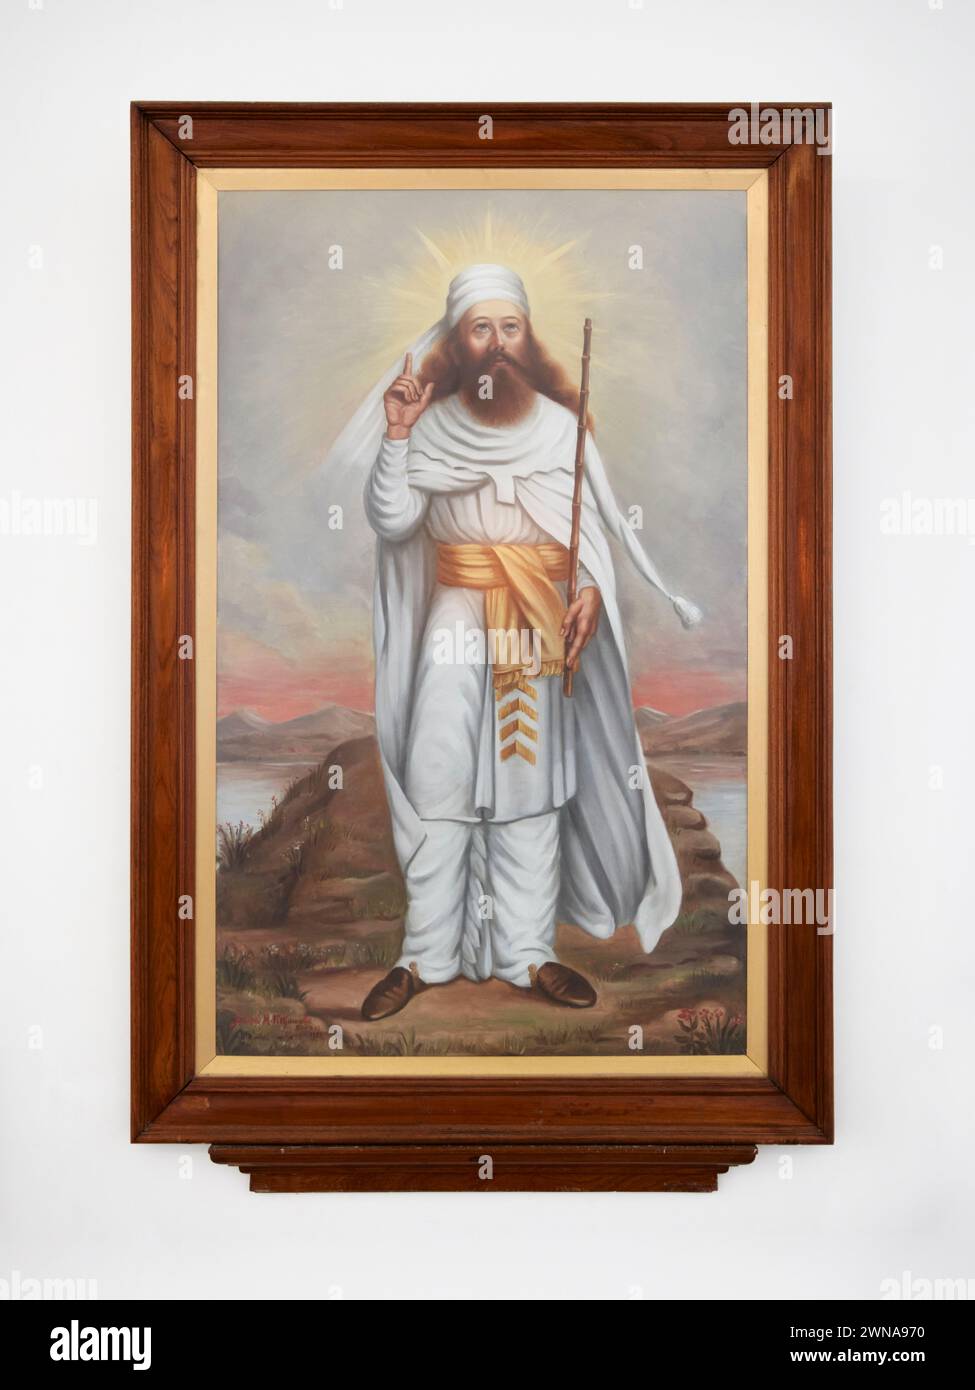 Peinture encadrée représentant Zoroastre, alias Zarathoustra - réformateur religieux et fondateur spirituel du zoroastrisme. Temple du feu zoroastrien, Yazd, Iran Banque D'Images